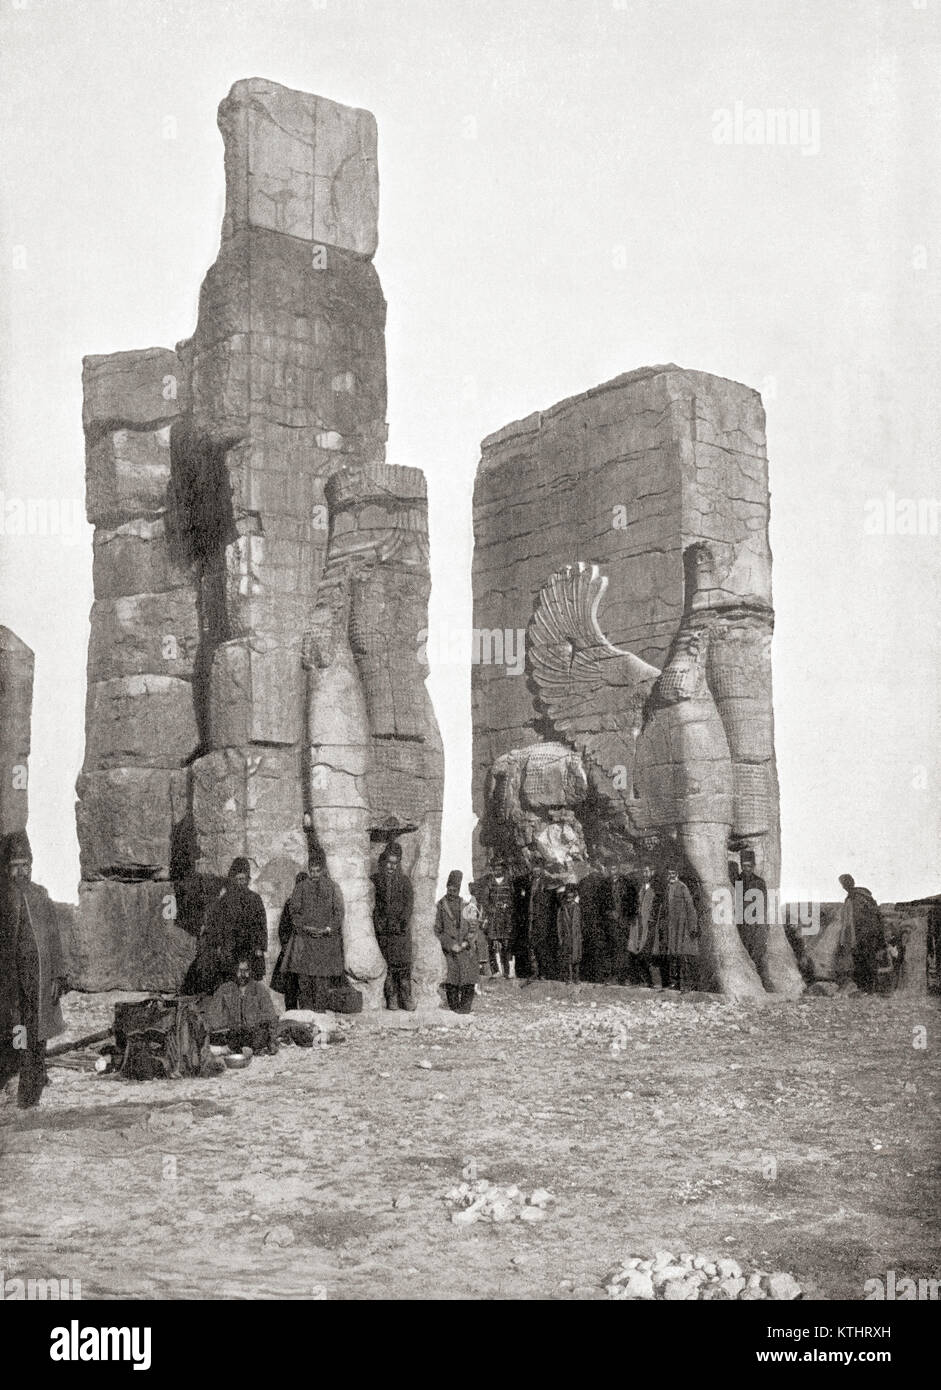 La porte de toutes les nations aka porte de Xerxès, Persepolis, Iran, vu ici à la fin du xixe siècle. Des merveilles du monde, publié vers 1920. Banque D'Images